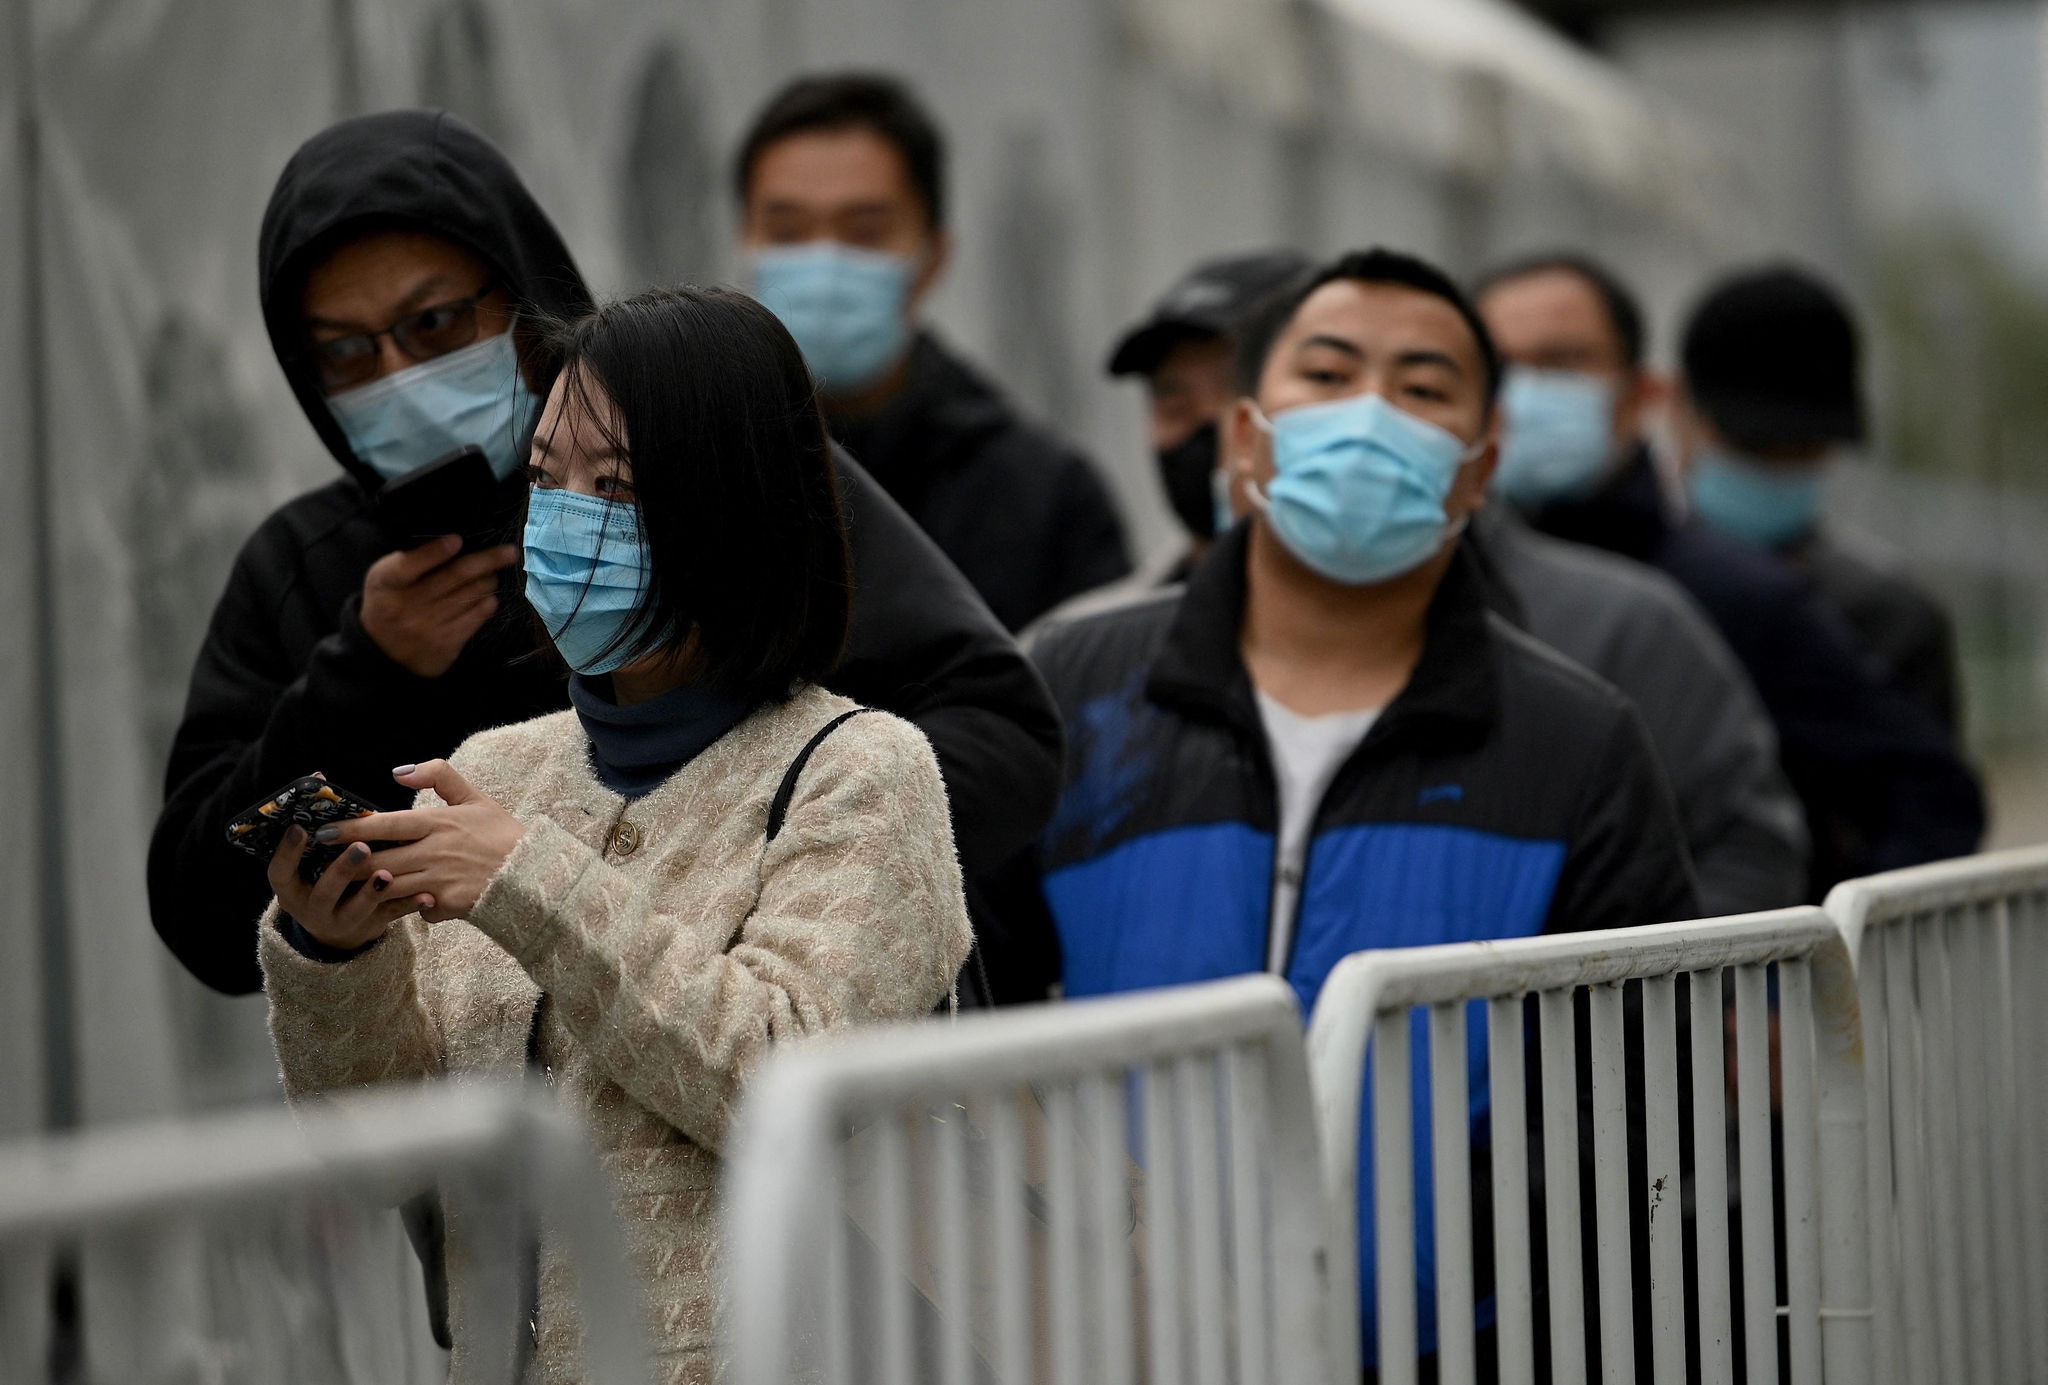 A partir de domingo, Pequim não vai mais impor quarentena às pessoas que chegam do exterior, mas continuará exigindo um teste de PCR negativo para os viajantes